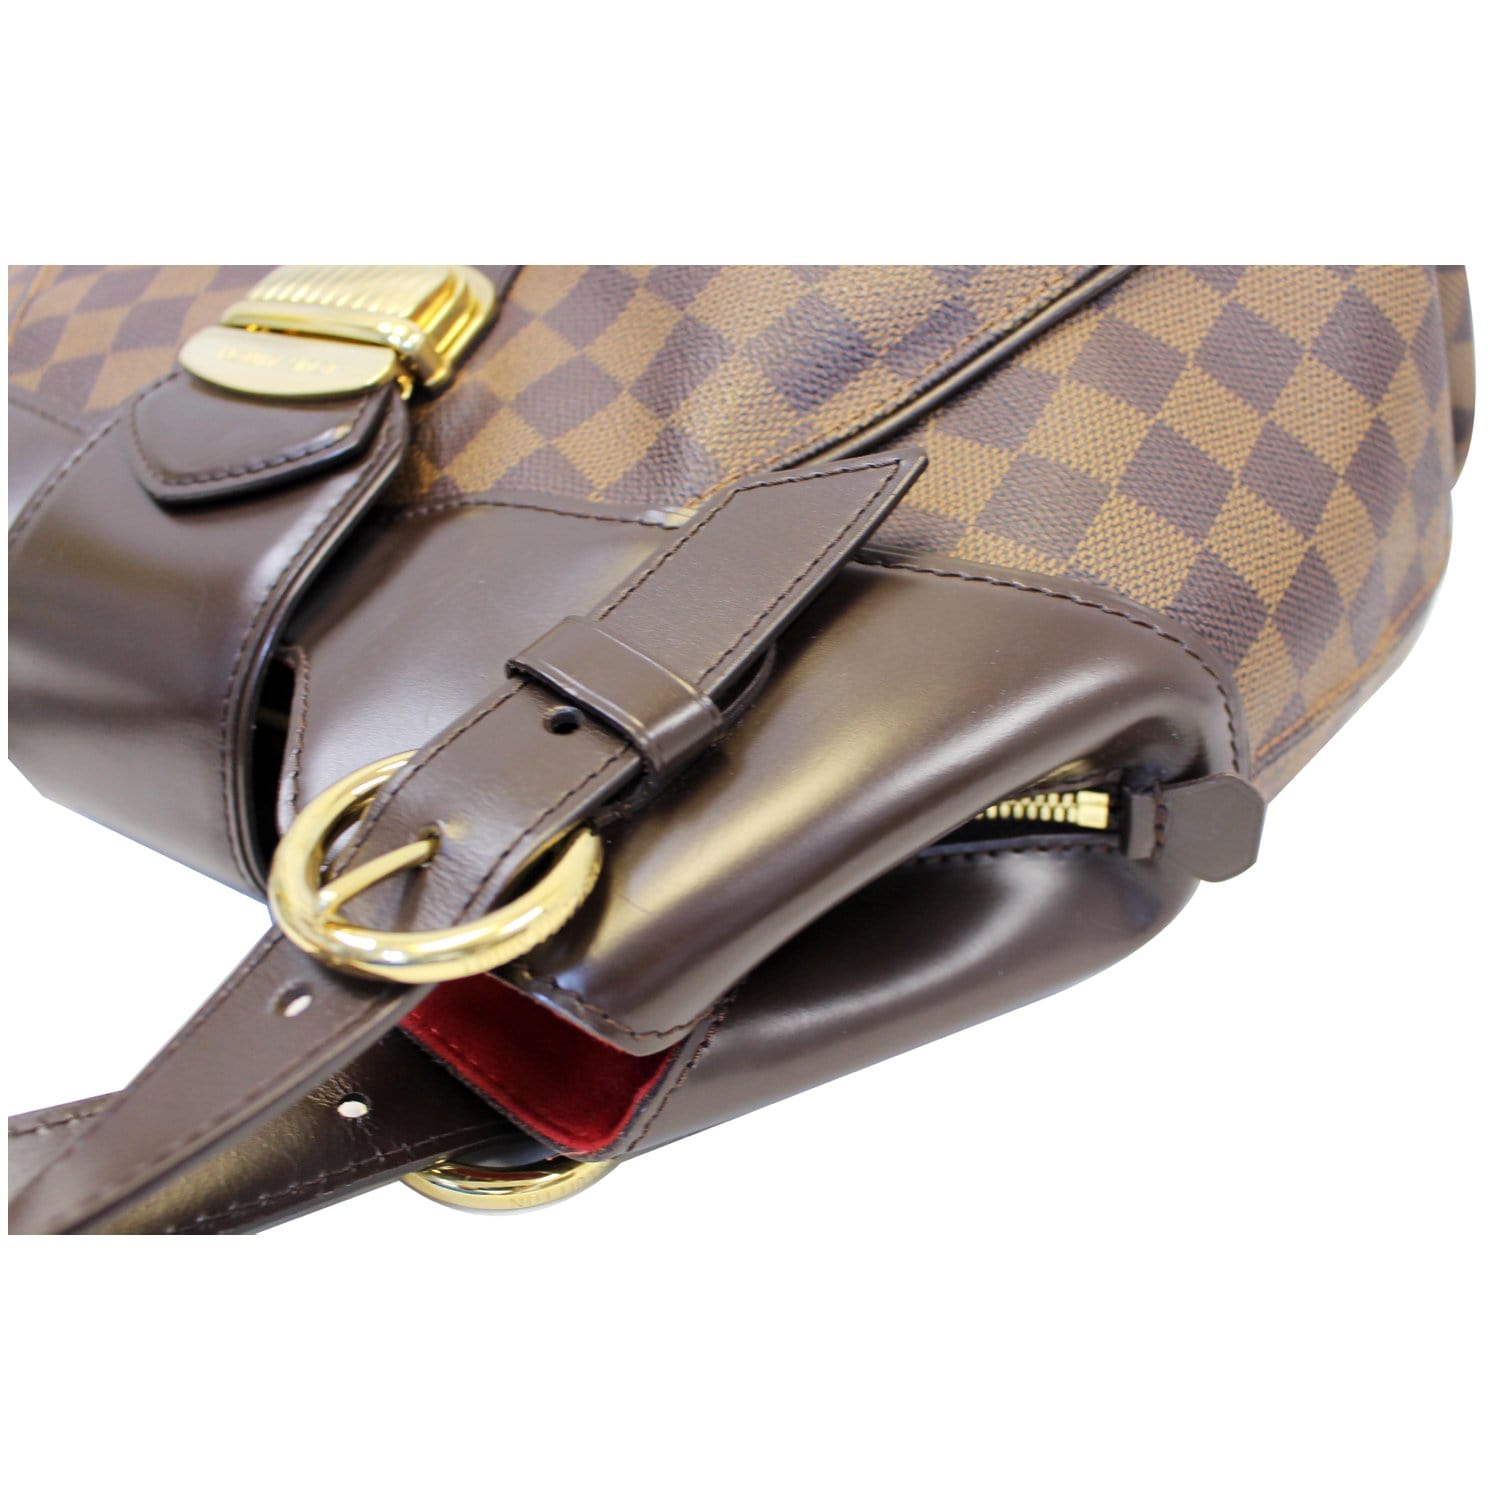 Louis Vuitton Sistina MM Damier Ebene Canvas Shoulder Bag For Sale at  1stDibs  louis vuitton damier ebene sistina mm, lv sistina mm, damier  canvas louis vuitton